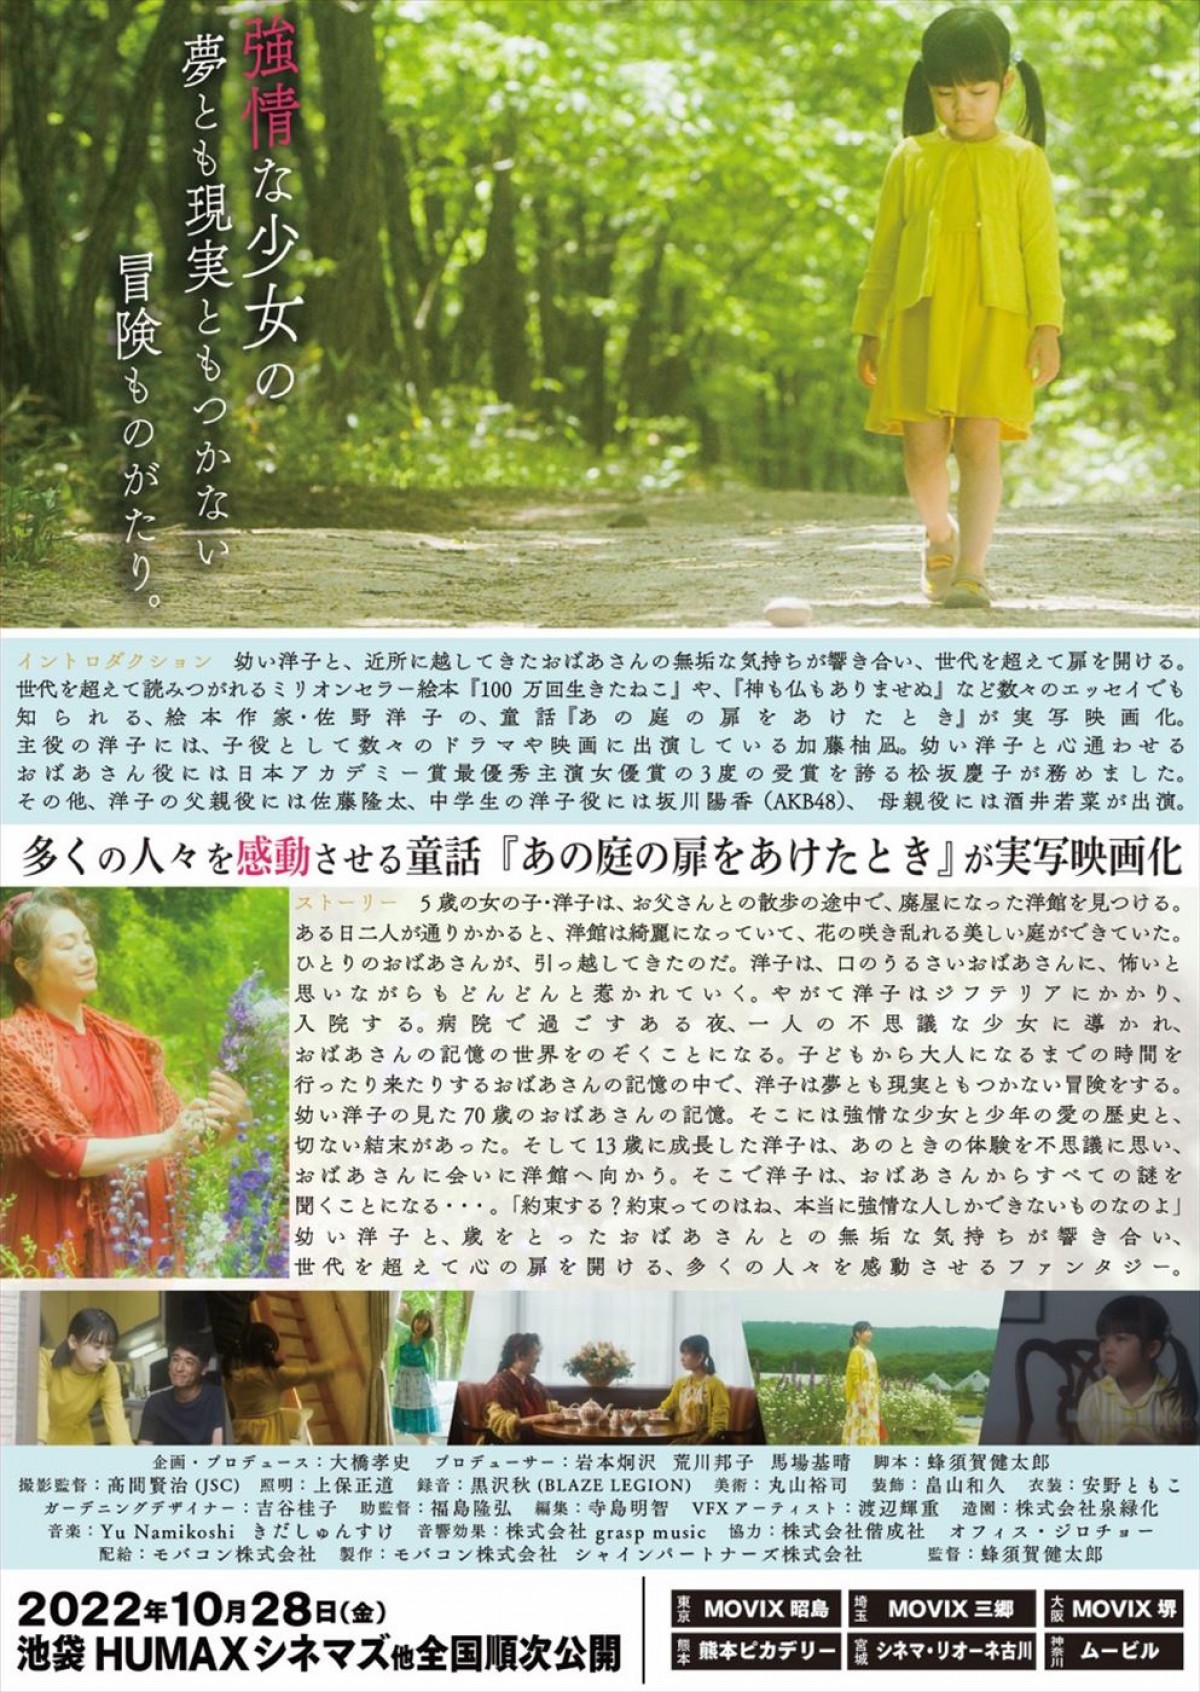 加藤柚凪×松坂慶子共演、童話原作の映画『あの庭の扉をあけたとき』予告解禁